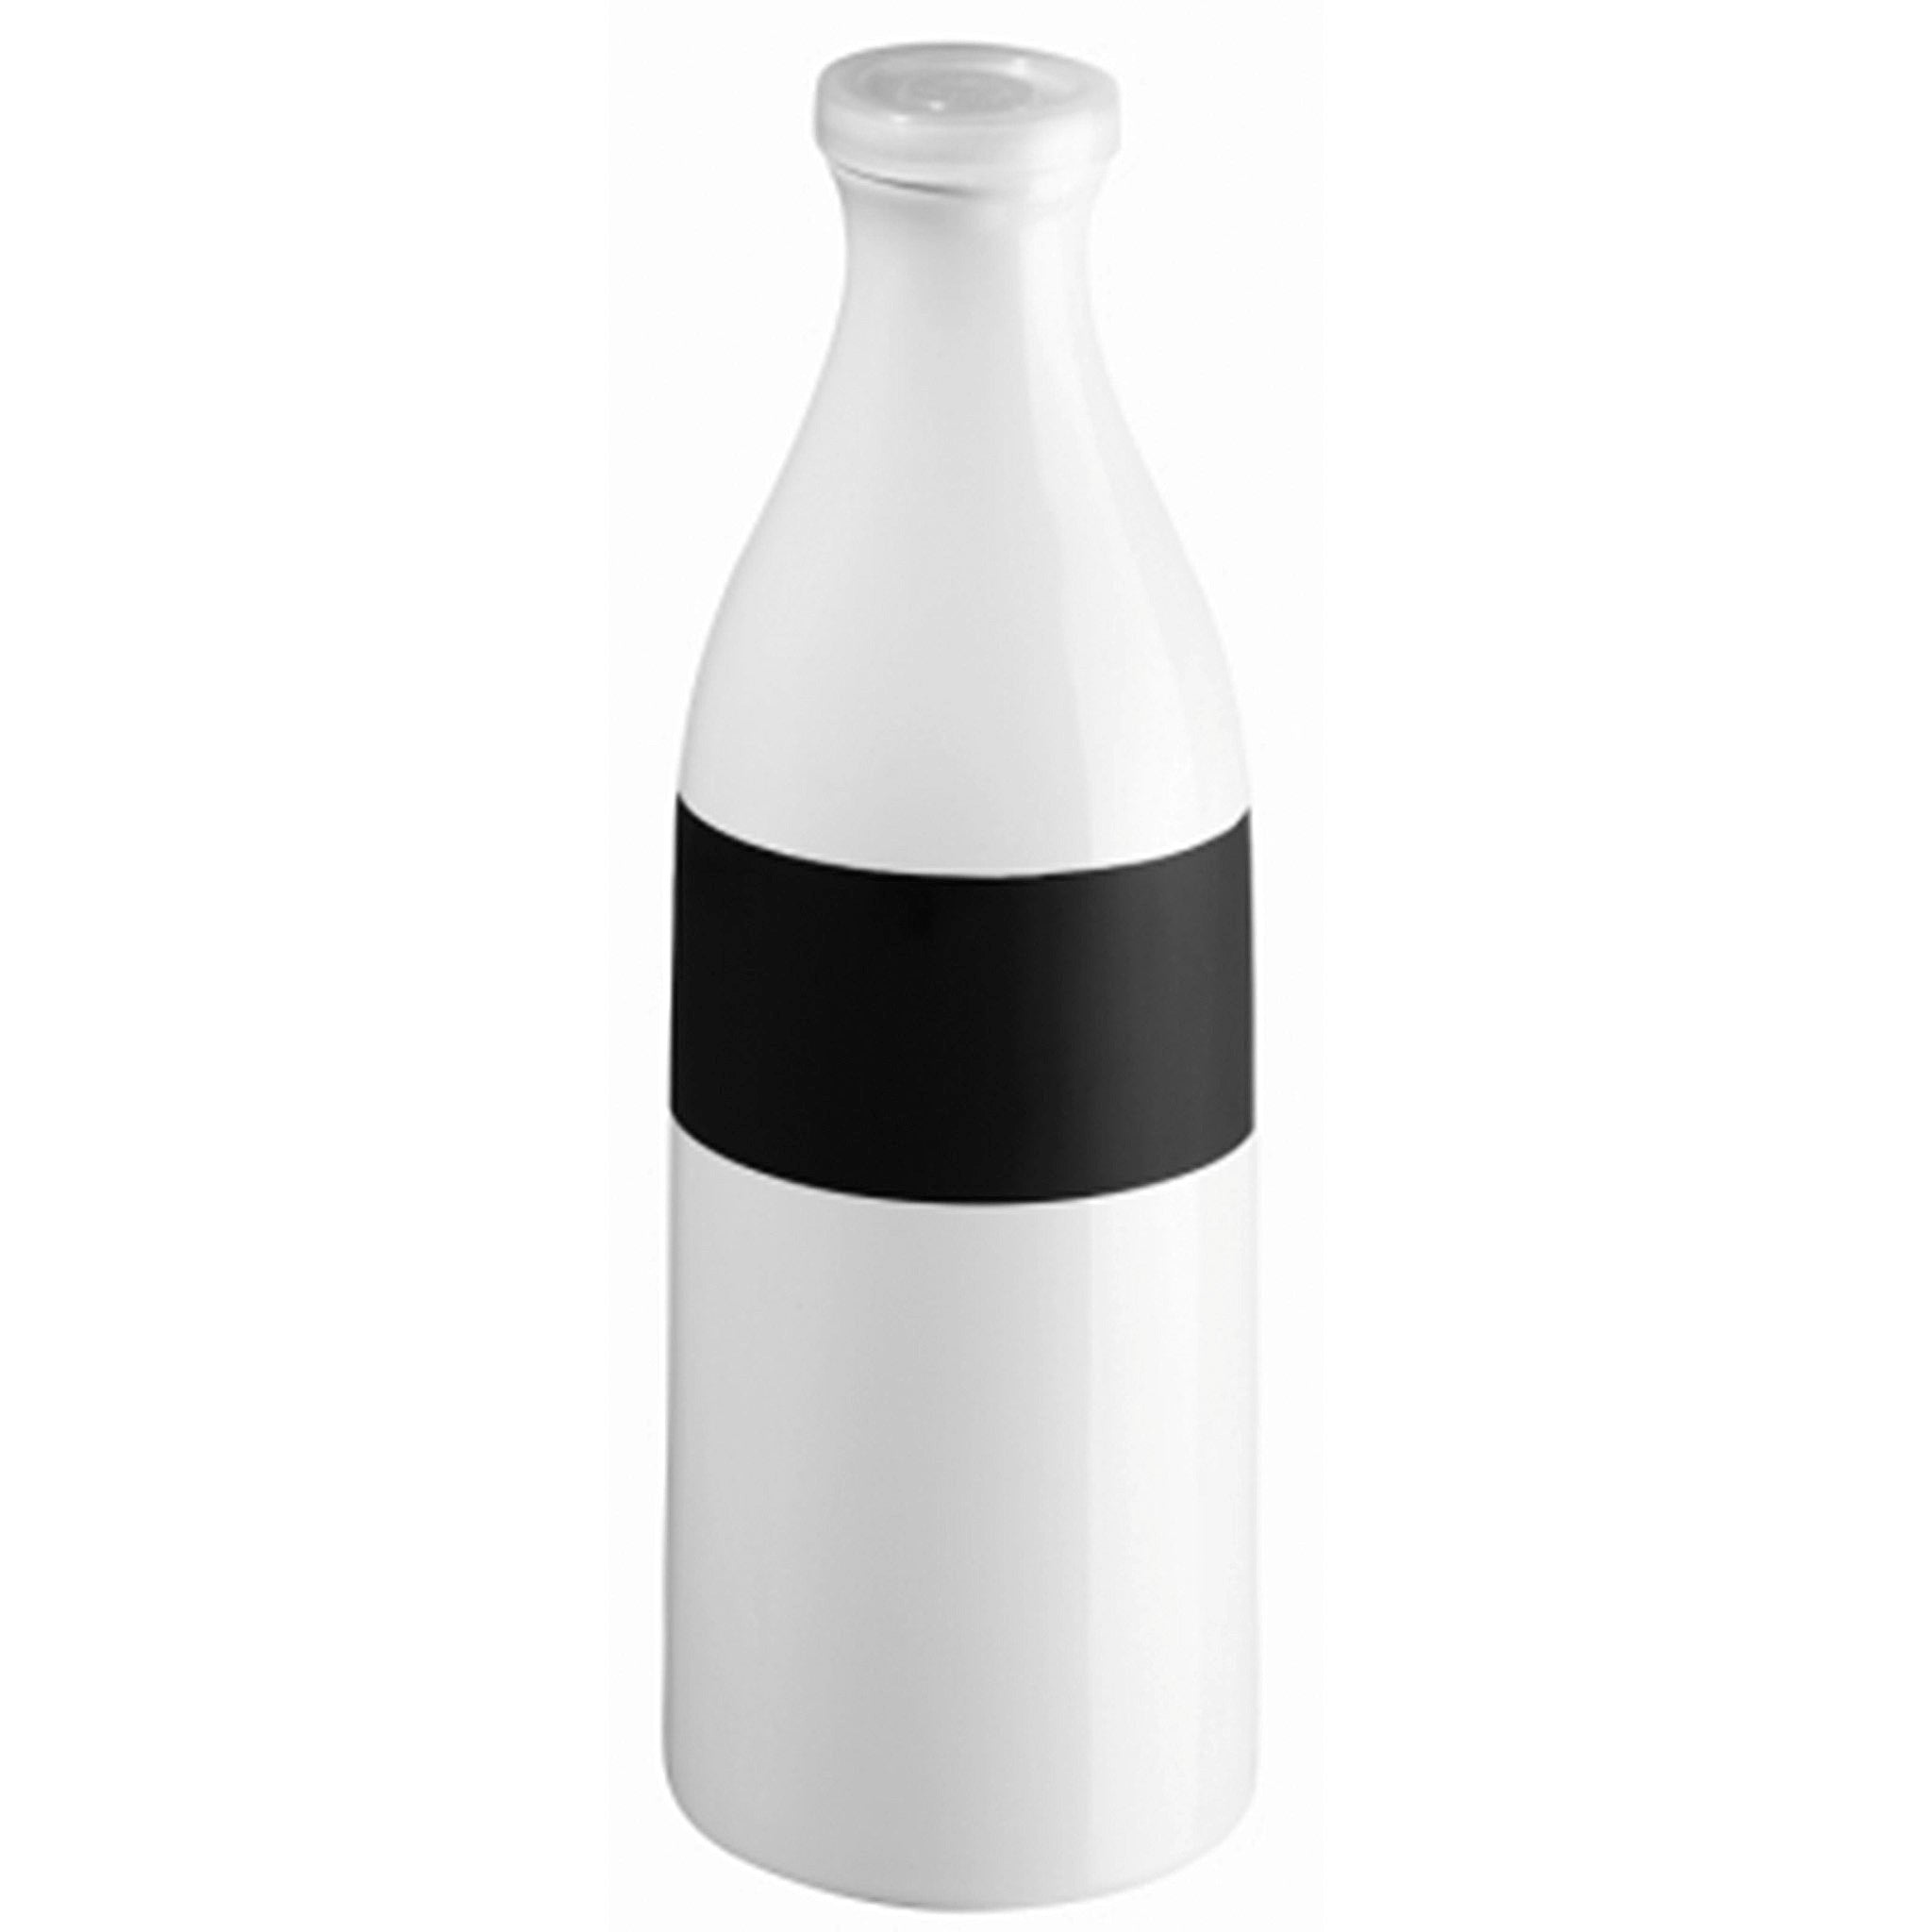 ASA-Selection's Memo Milk Bottle 48559-147